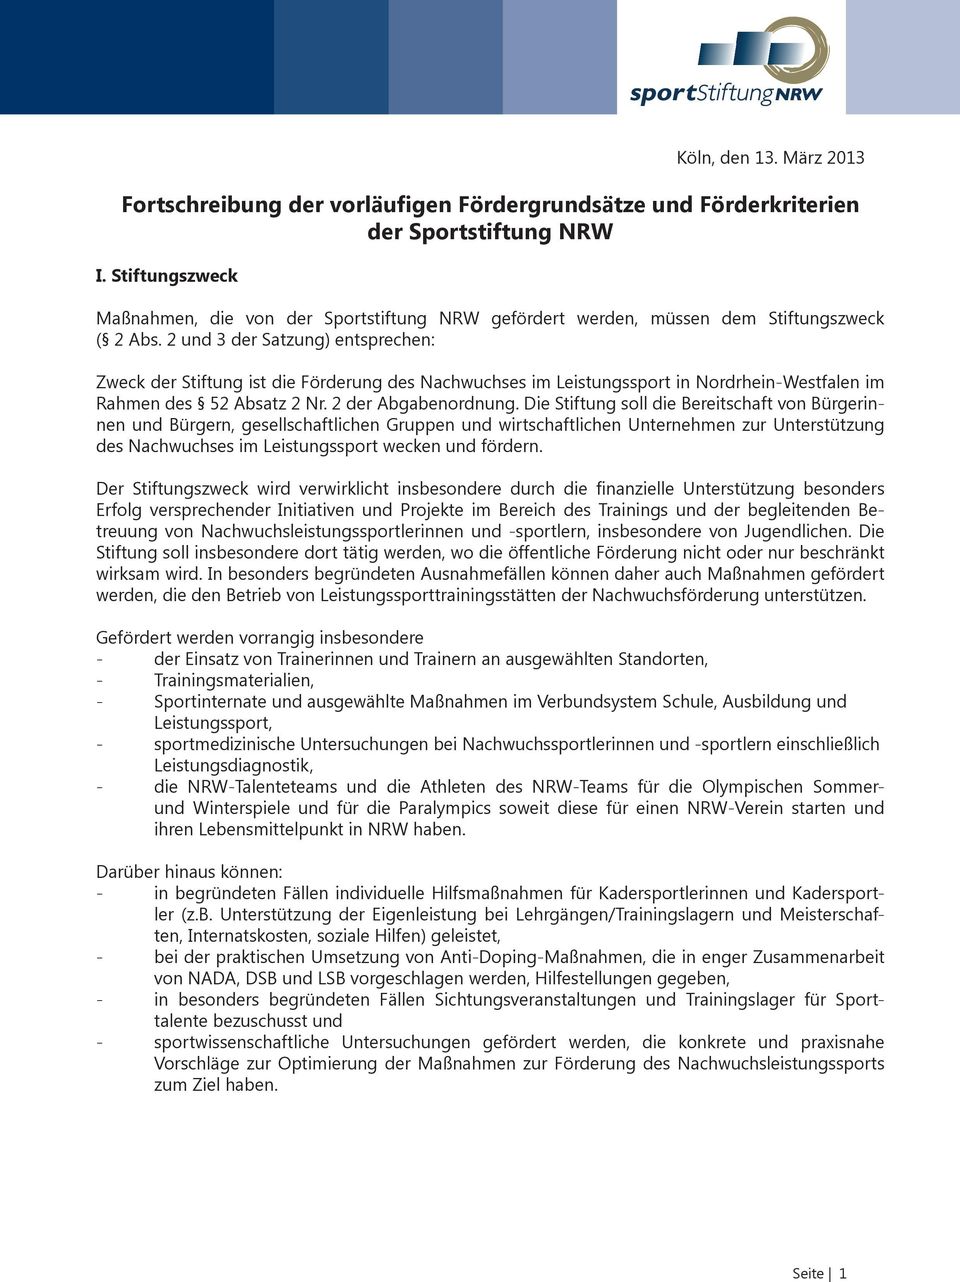 2 und 3 der Satzung) entsprechen: Zweck der Stiftung ist die Förderung des Nachwuchses im Leistungssport in Nordrhein-Westfalen im Rahmen des 52 Absatz 2 Nr. 2 der Abgabenordnung.